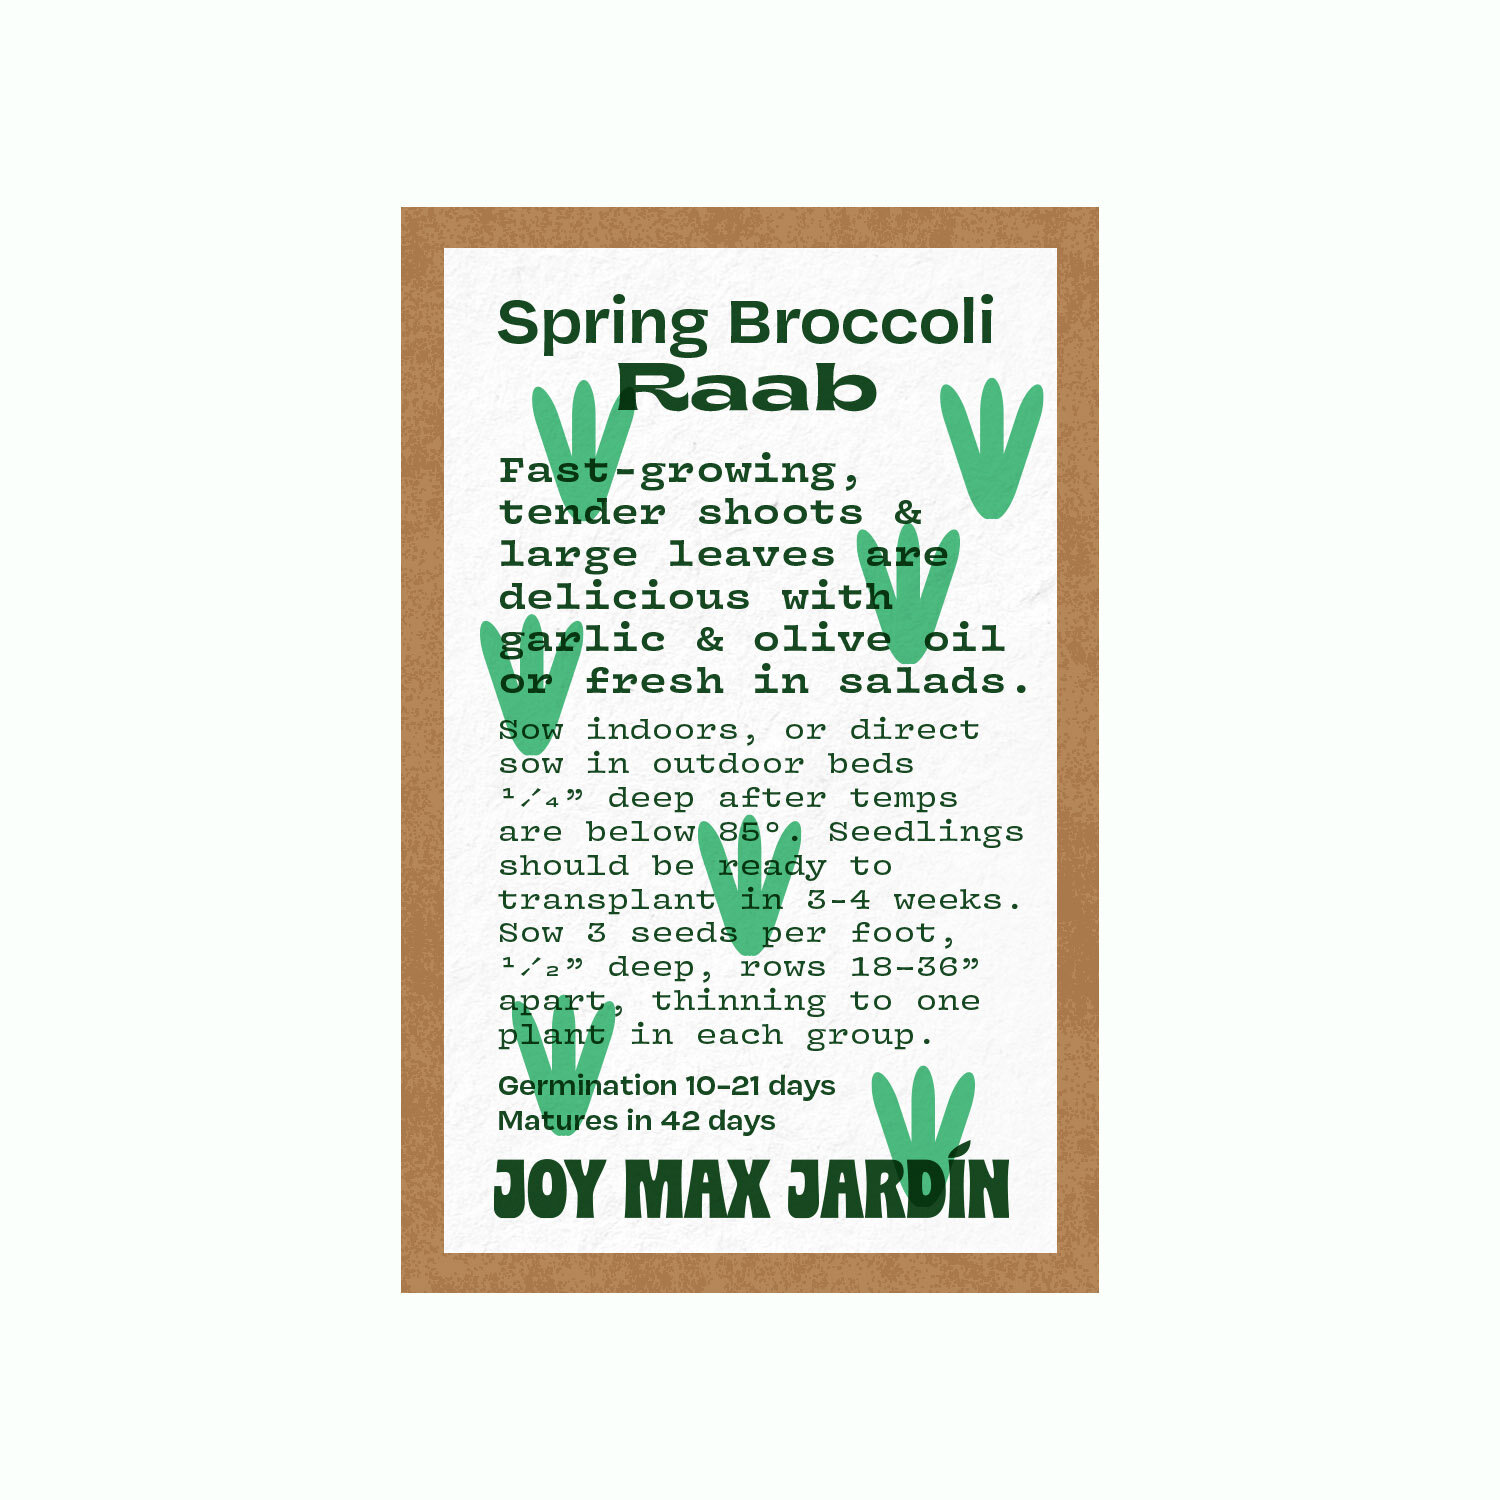 Joy Max Jardin Broccoli Rabe Seed.jpg